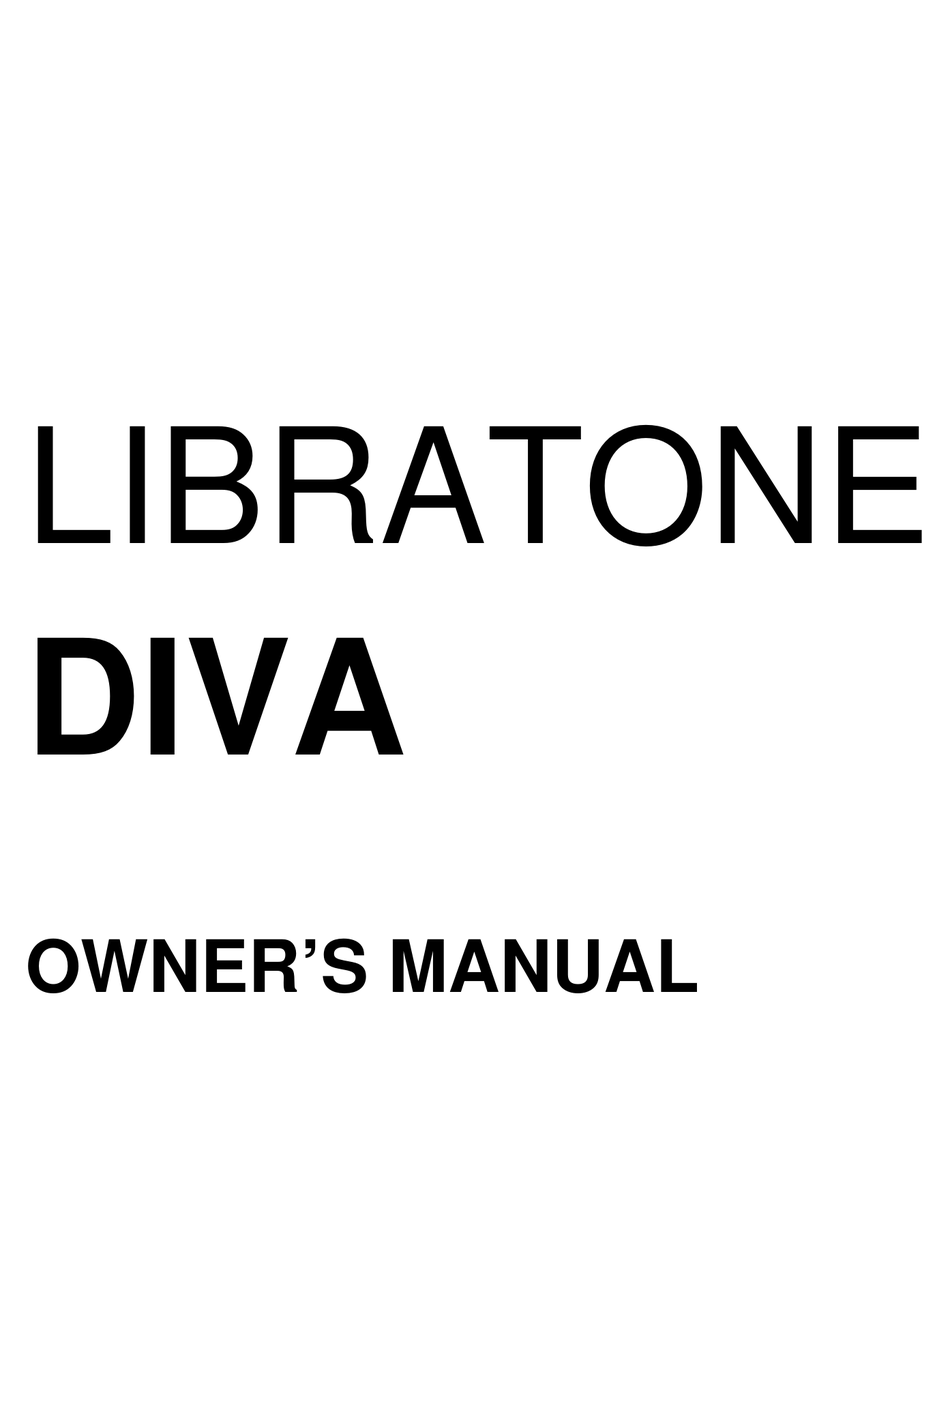 LIBRATONE DIVA OWNER'S MANUAL Pdf Download |